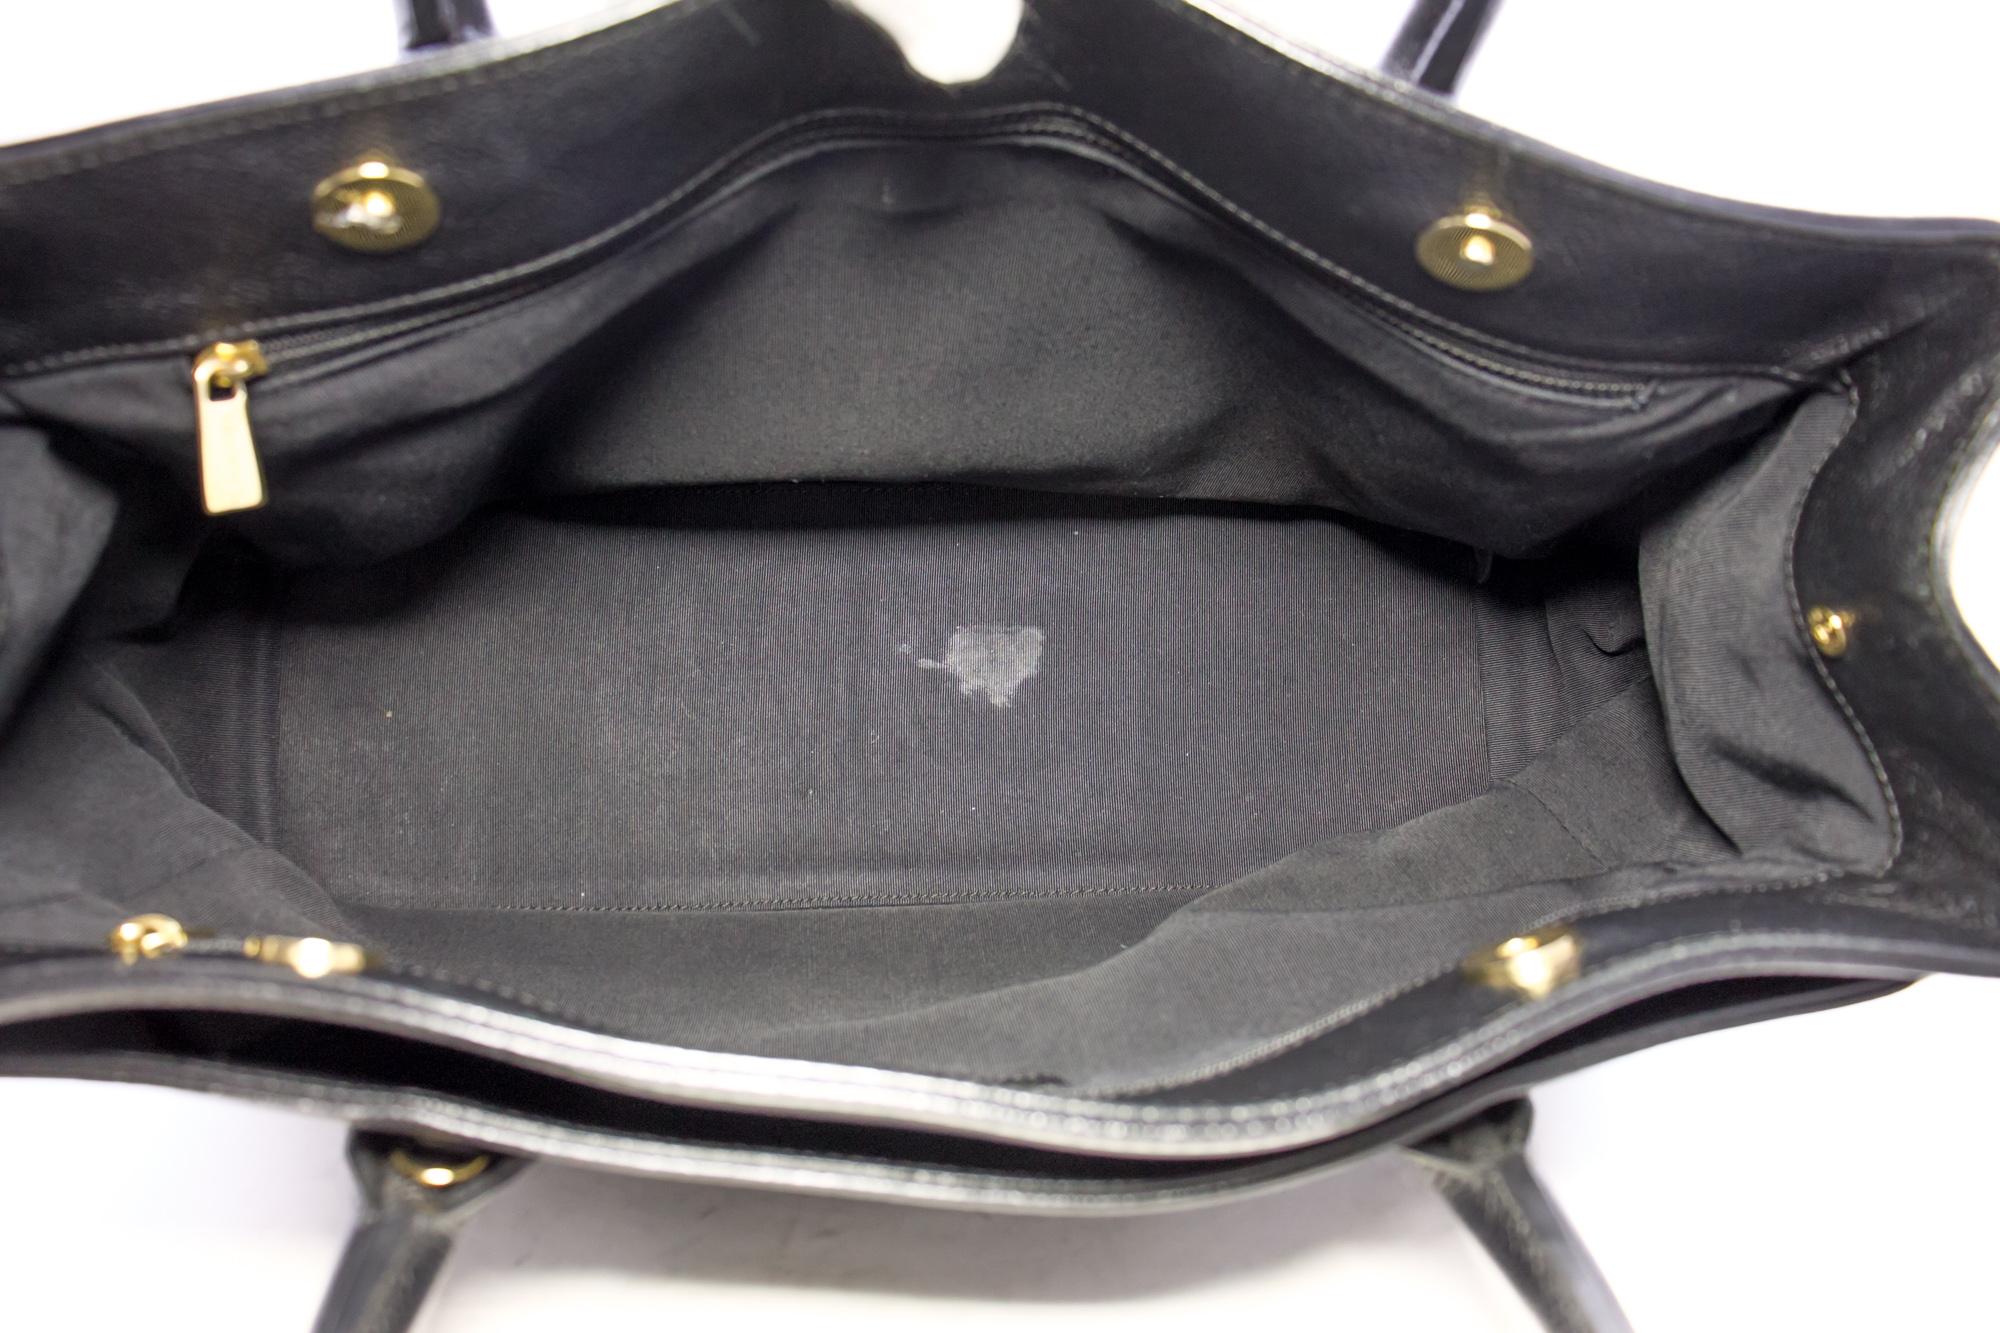 CHANEL Executive Tote 2Way Caviar Shoulder Bag Handbag Black 6